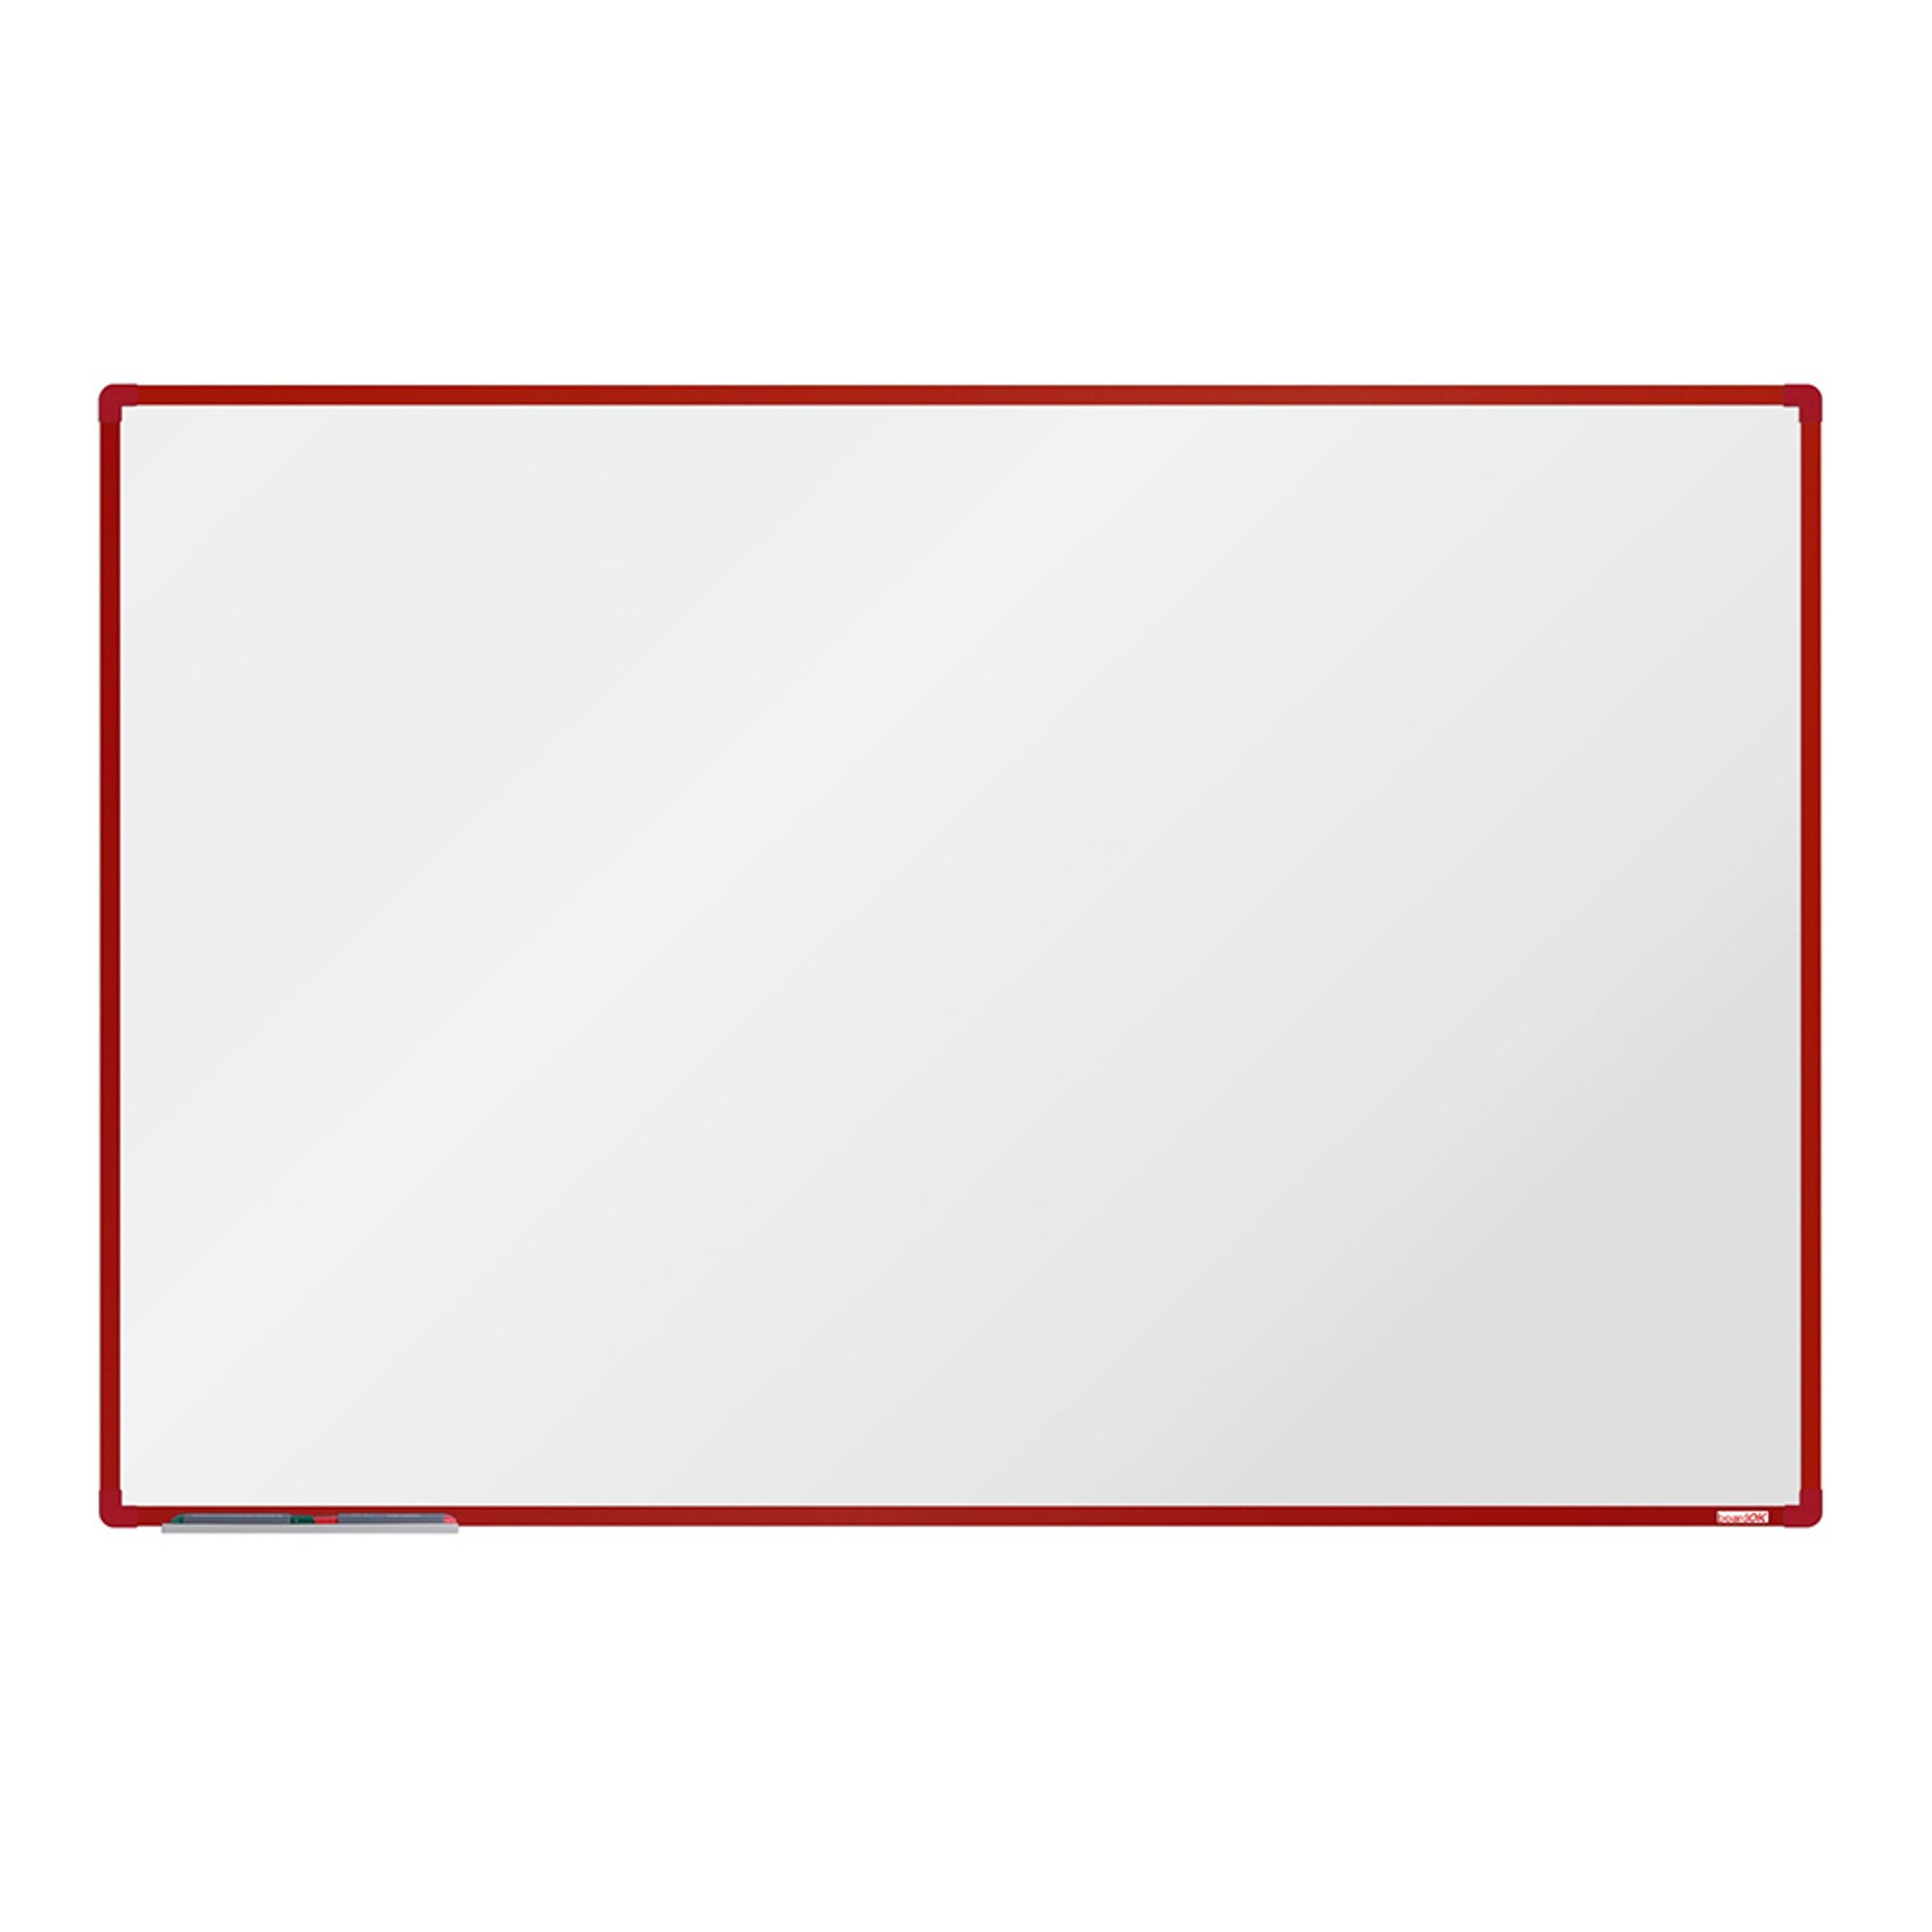 Bílá magnetická popisovací tabule boardOK, 1800 x 1200 mm, červený rám